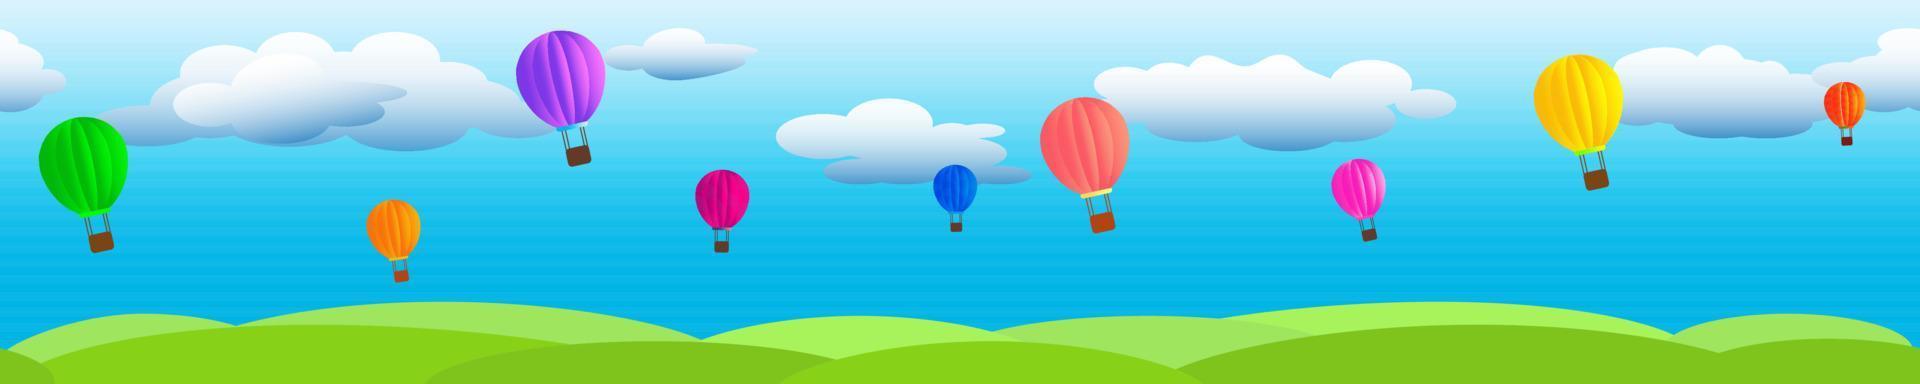 wolken op een blauwe lucht met vliegende ballonnen en groen gras. vector